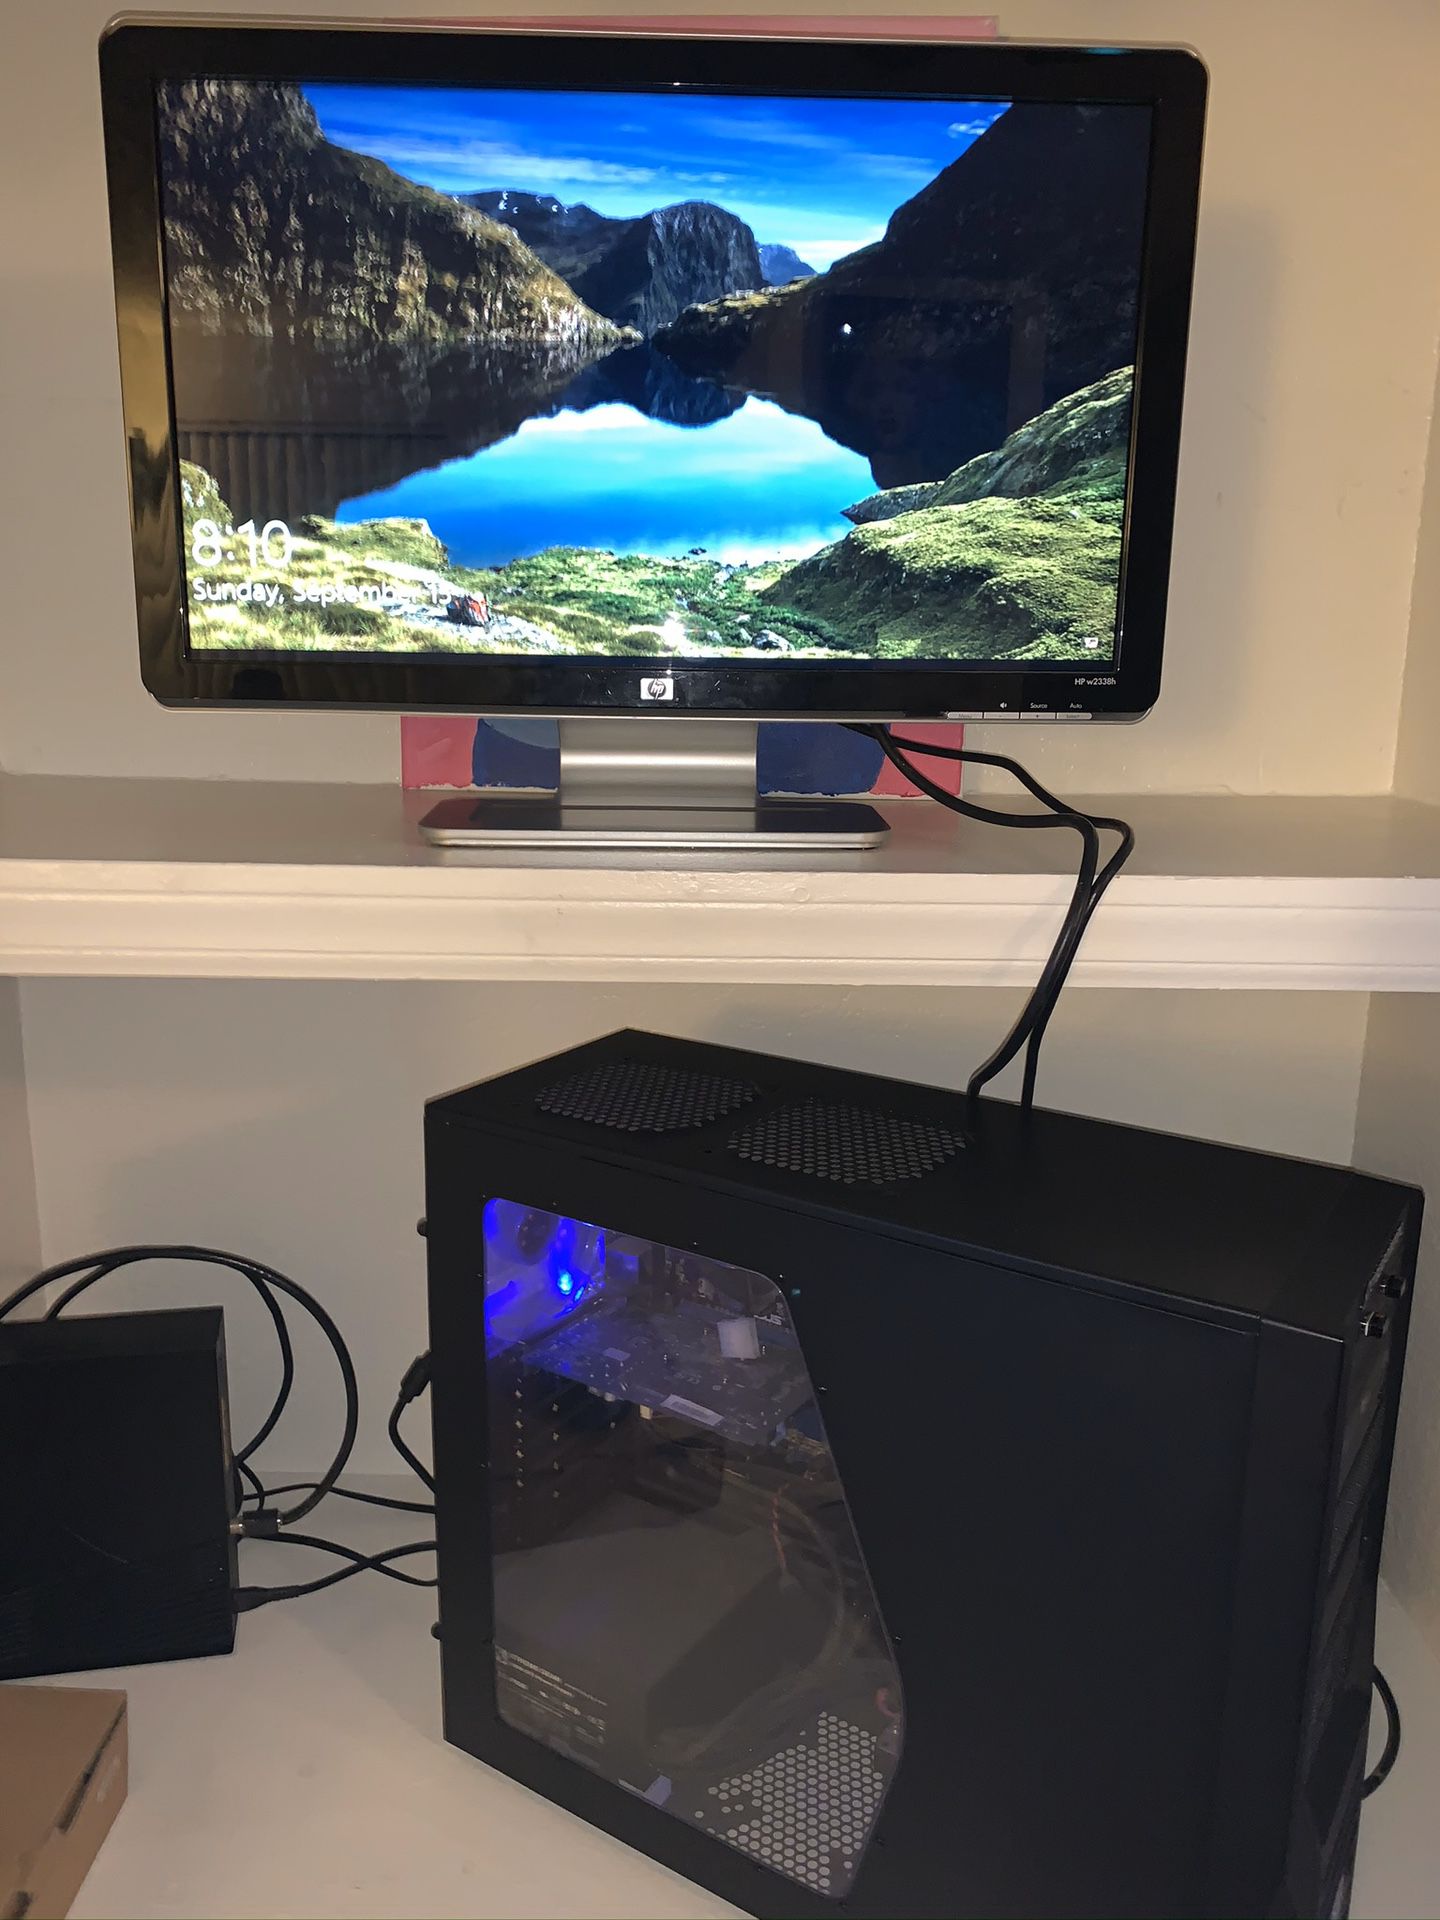 HD Monitor and gaming computer